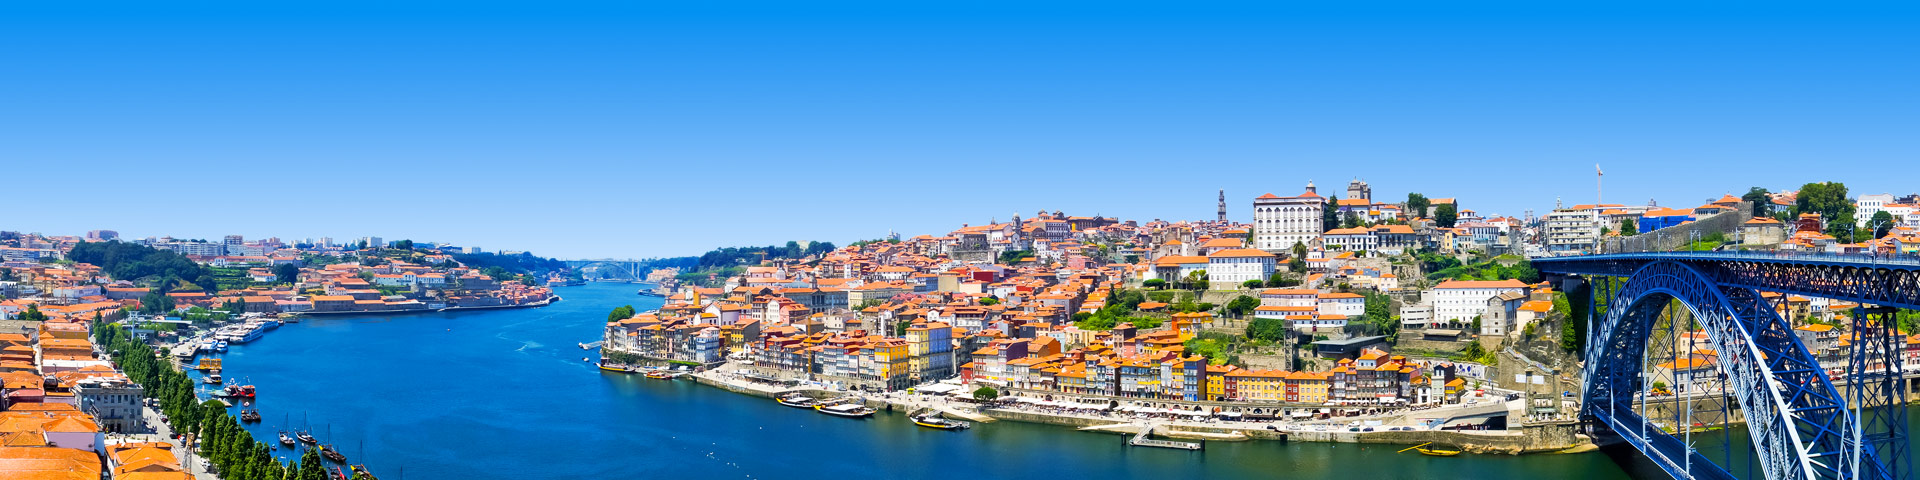 Uitzicht op een stad in Portugal